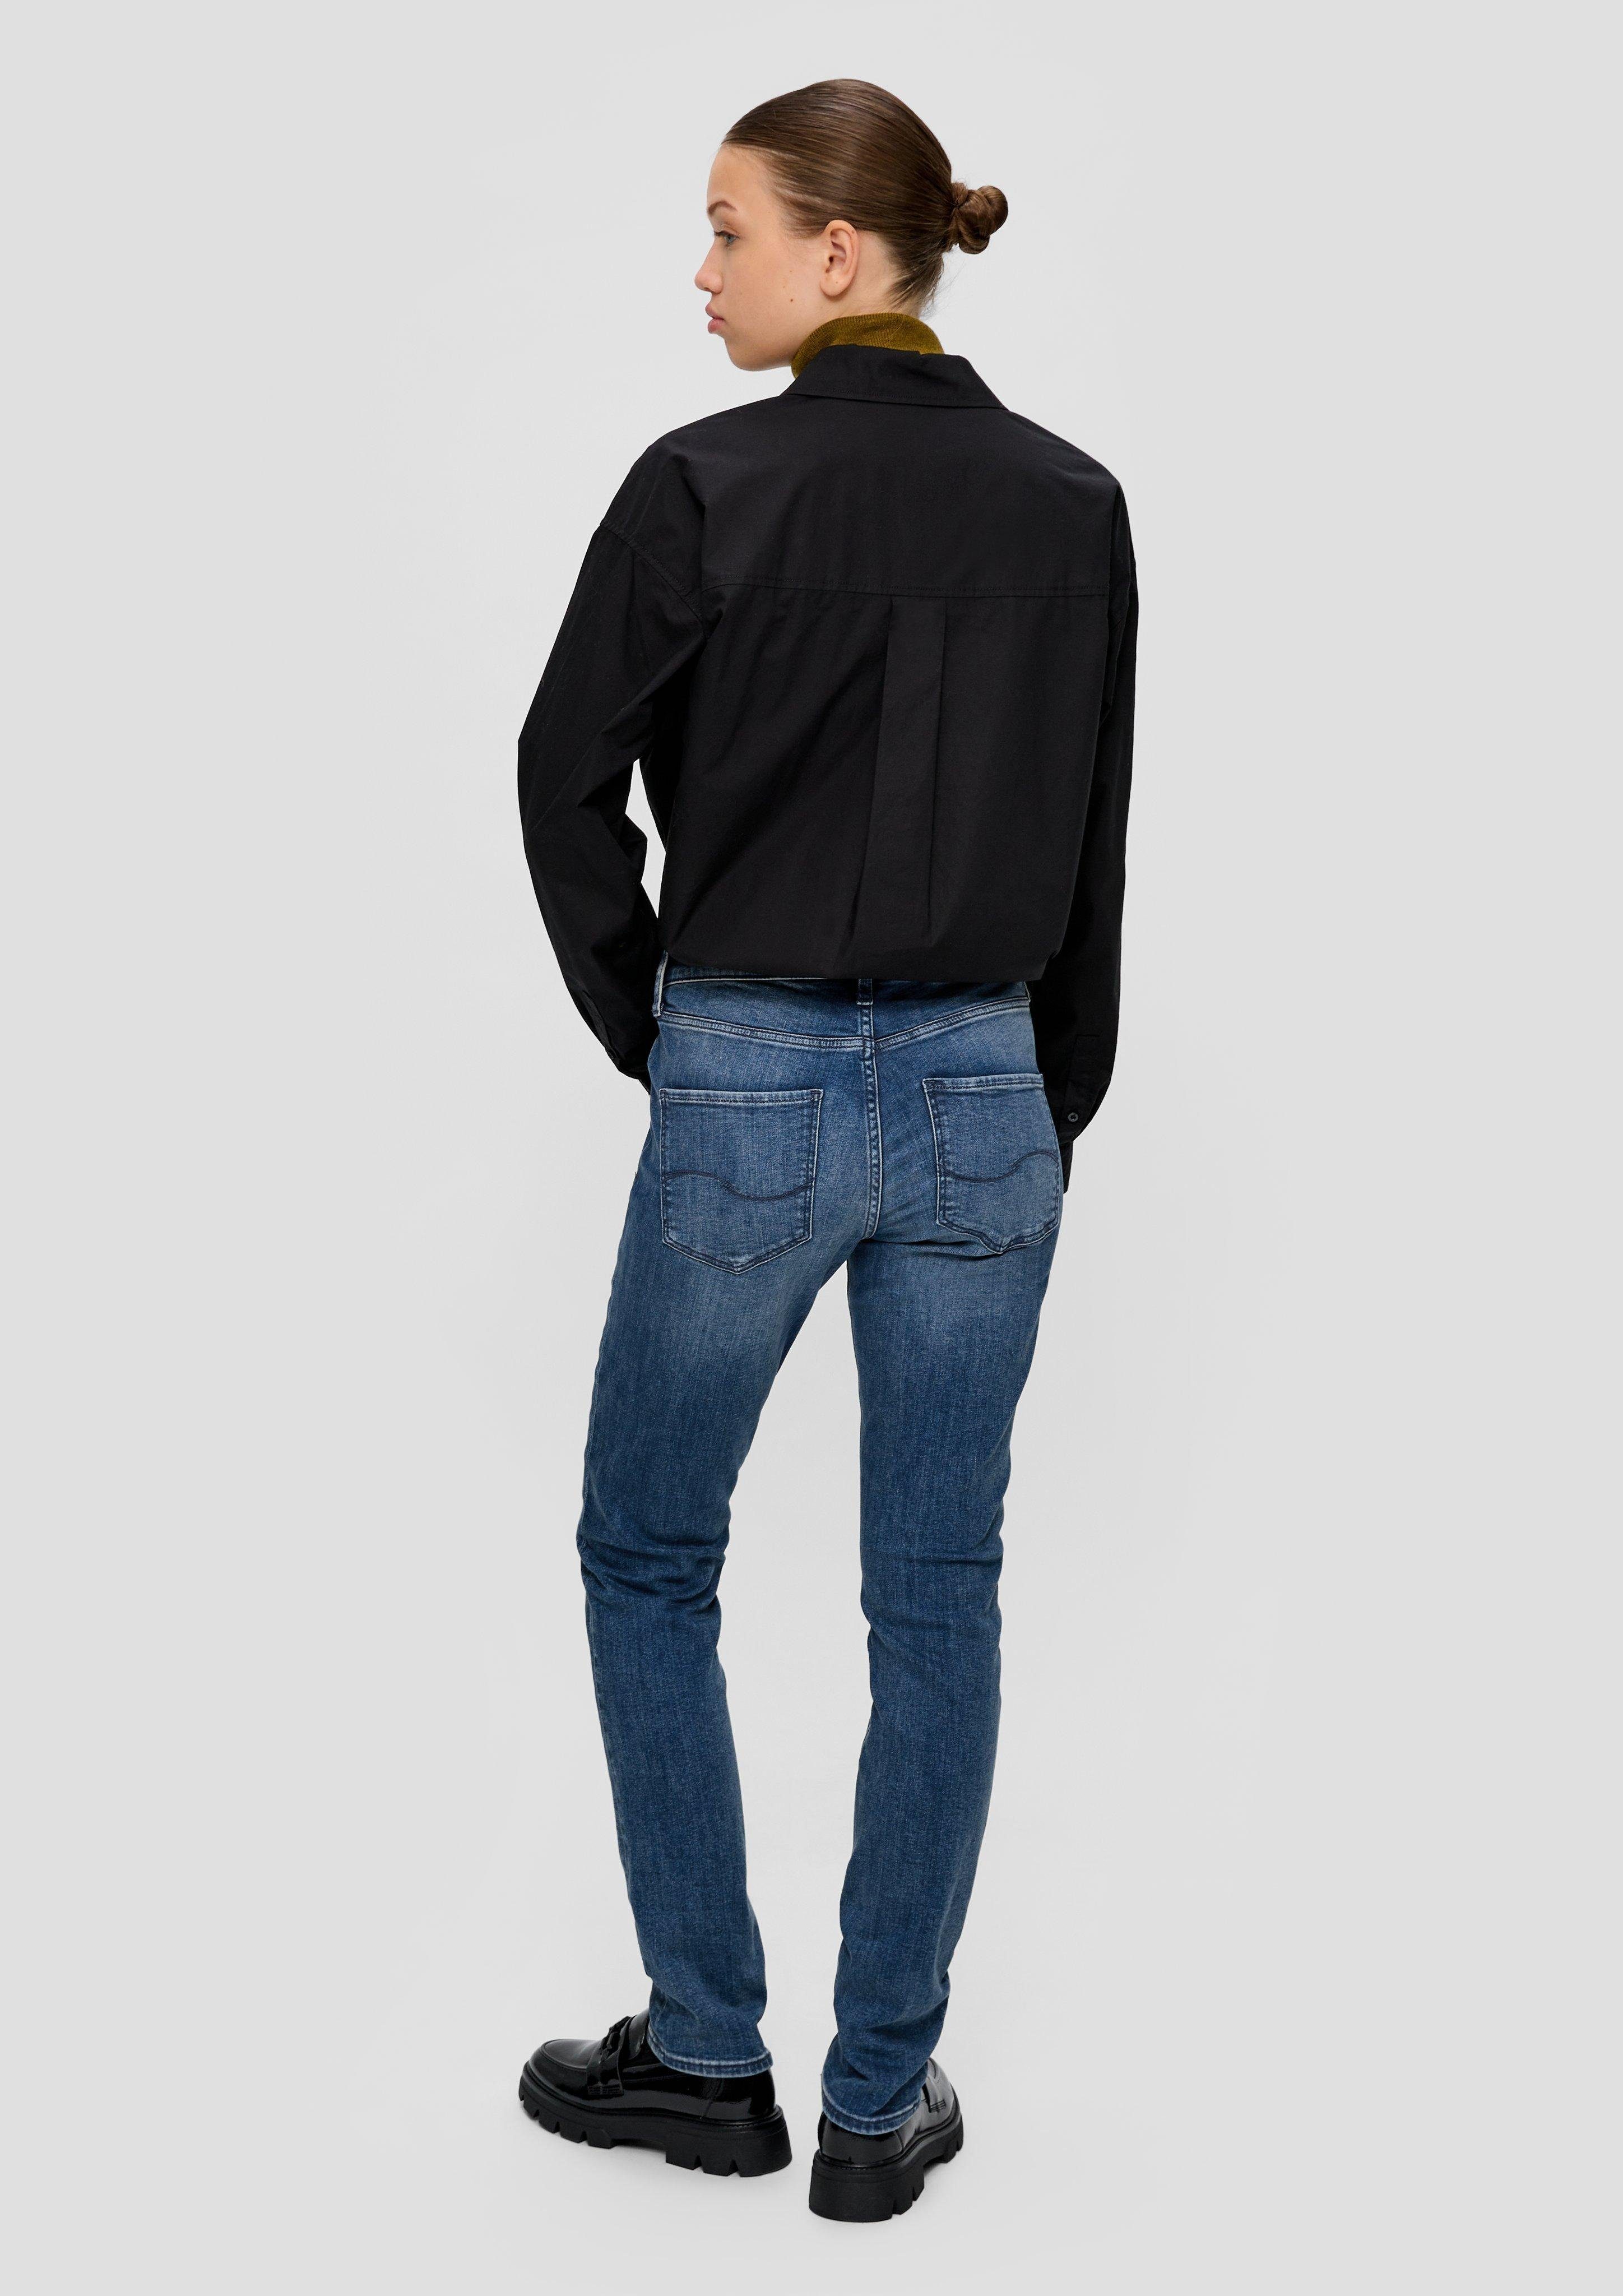 Leg QS Mid Jeans Fit / Label-Patch / / Slim Catie Rise blau Stoffhose Slim